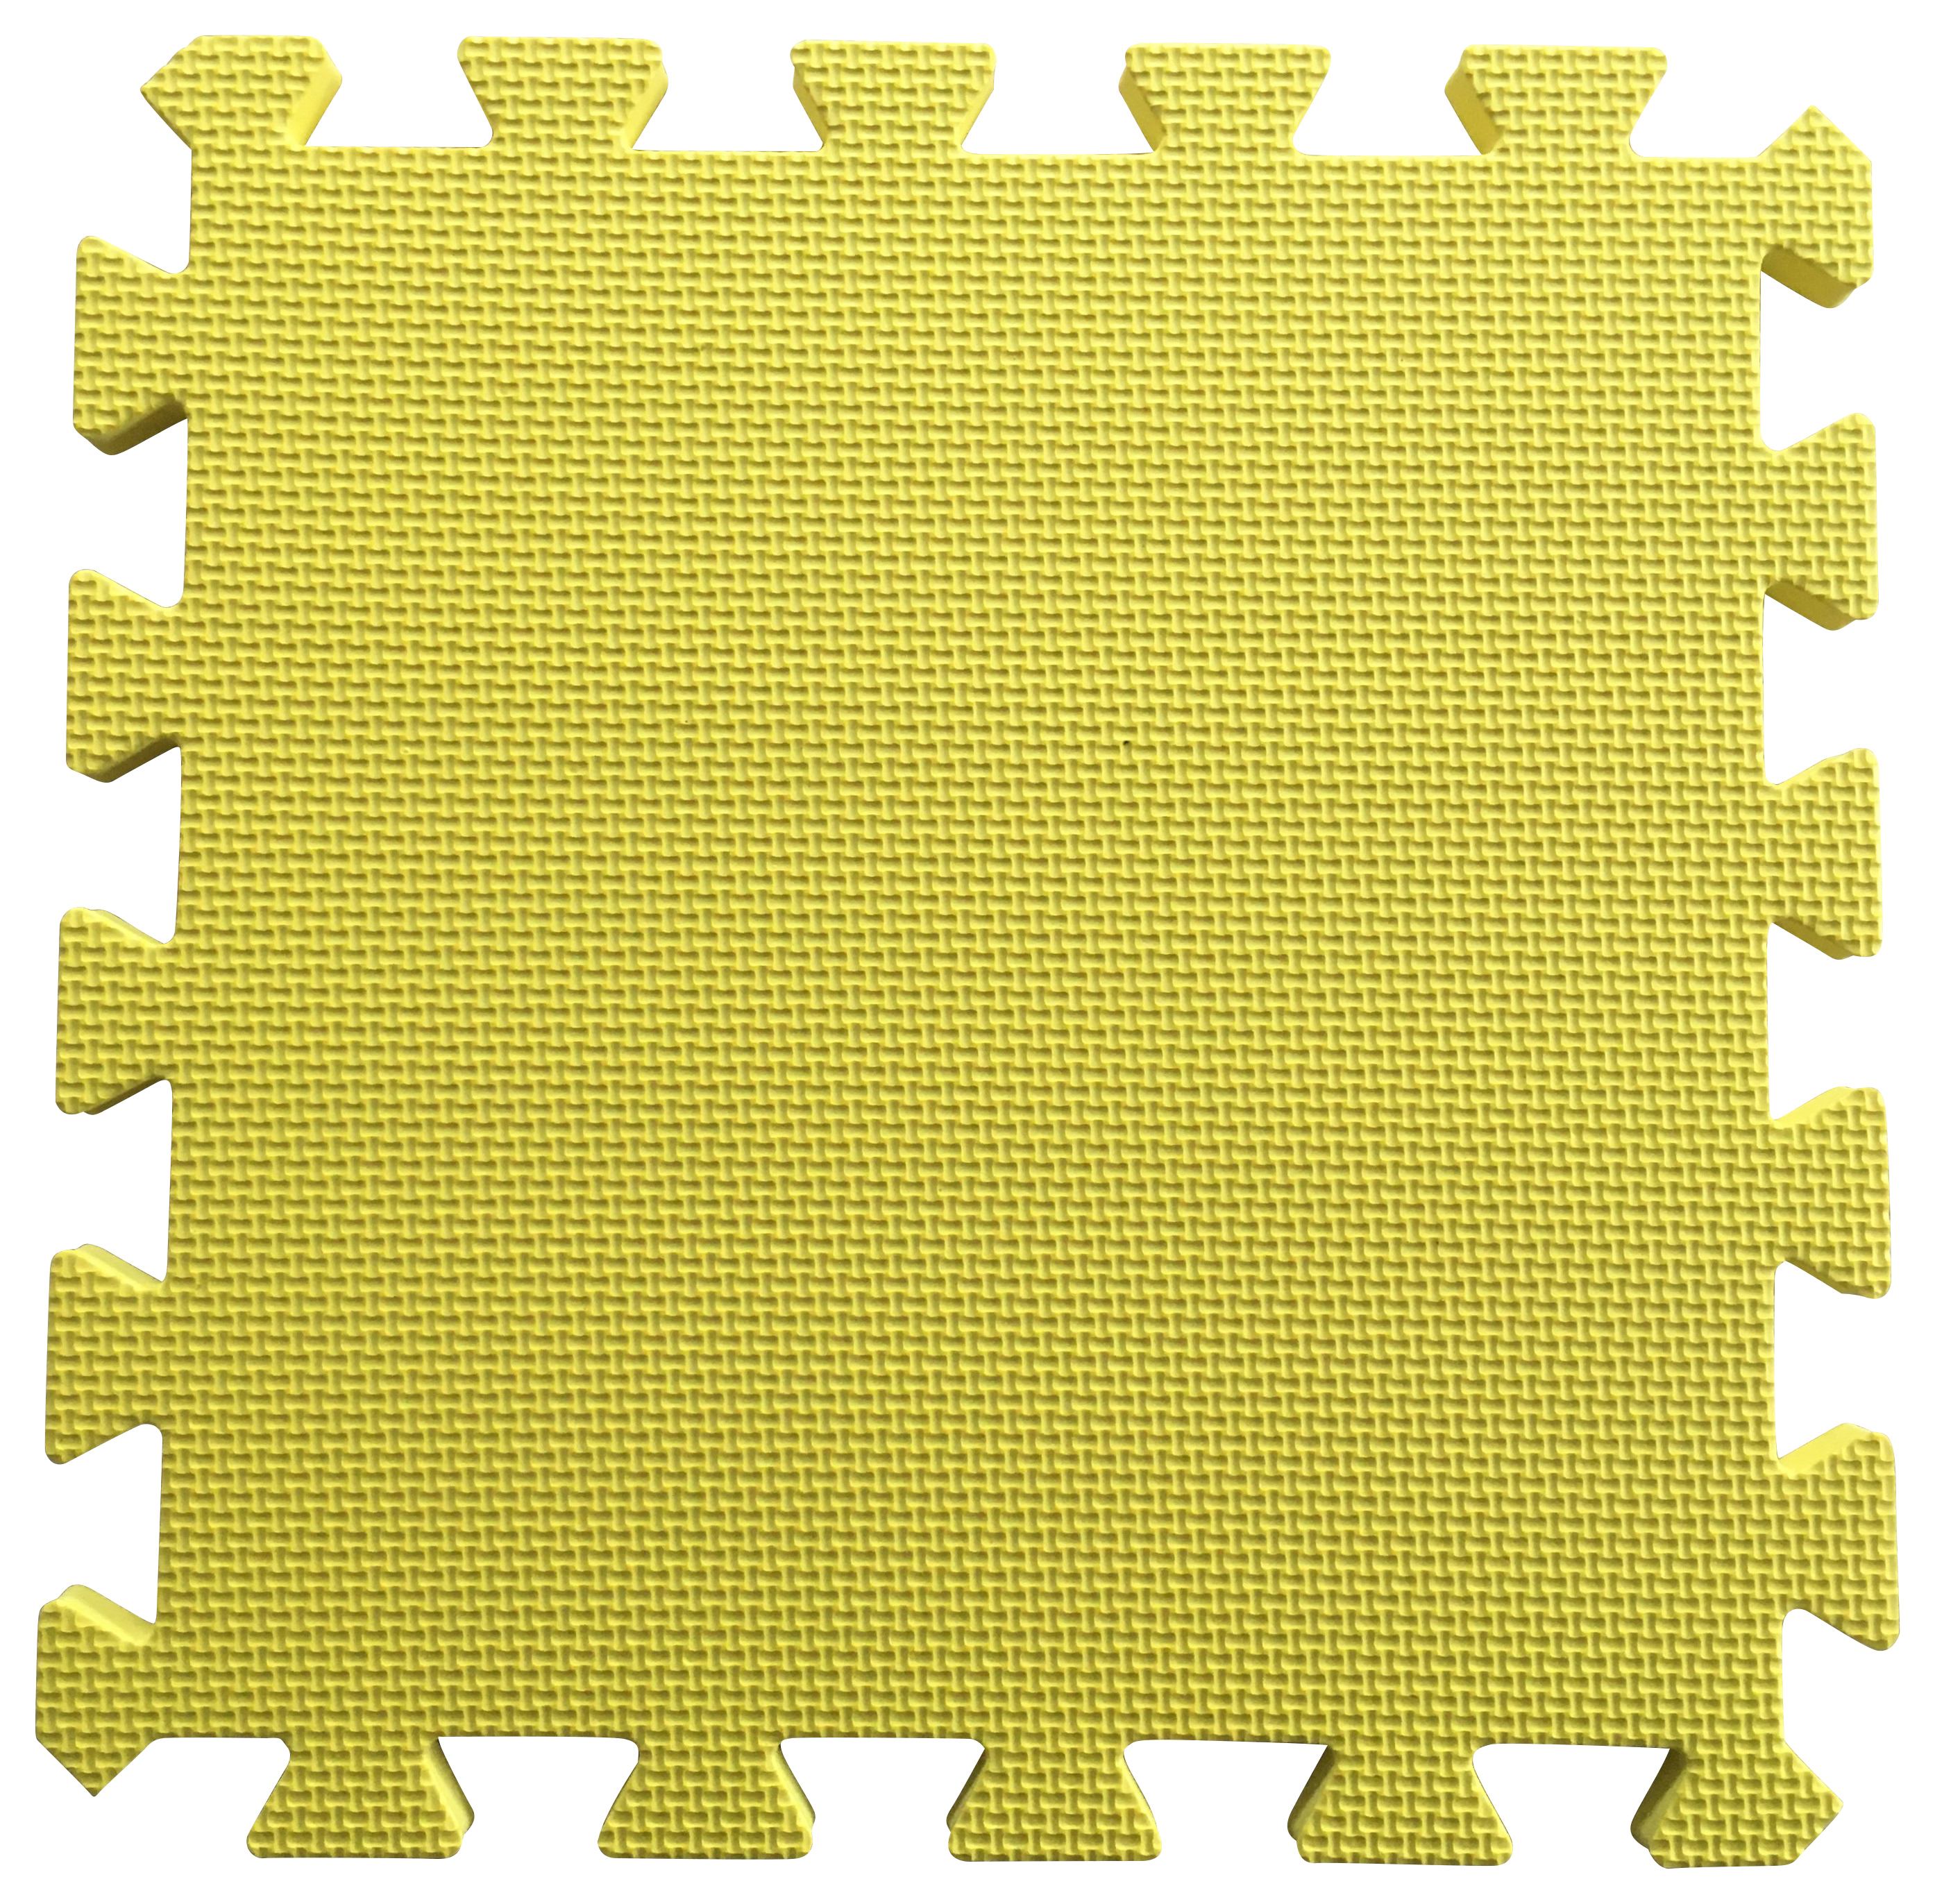 Warm Floor Yellow Interlocking Floor Tiles for Garden Buildings - 7 x 5ft